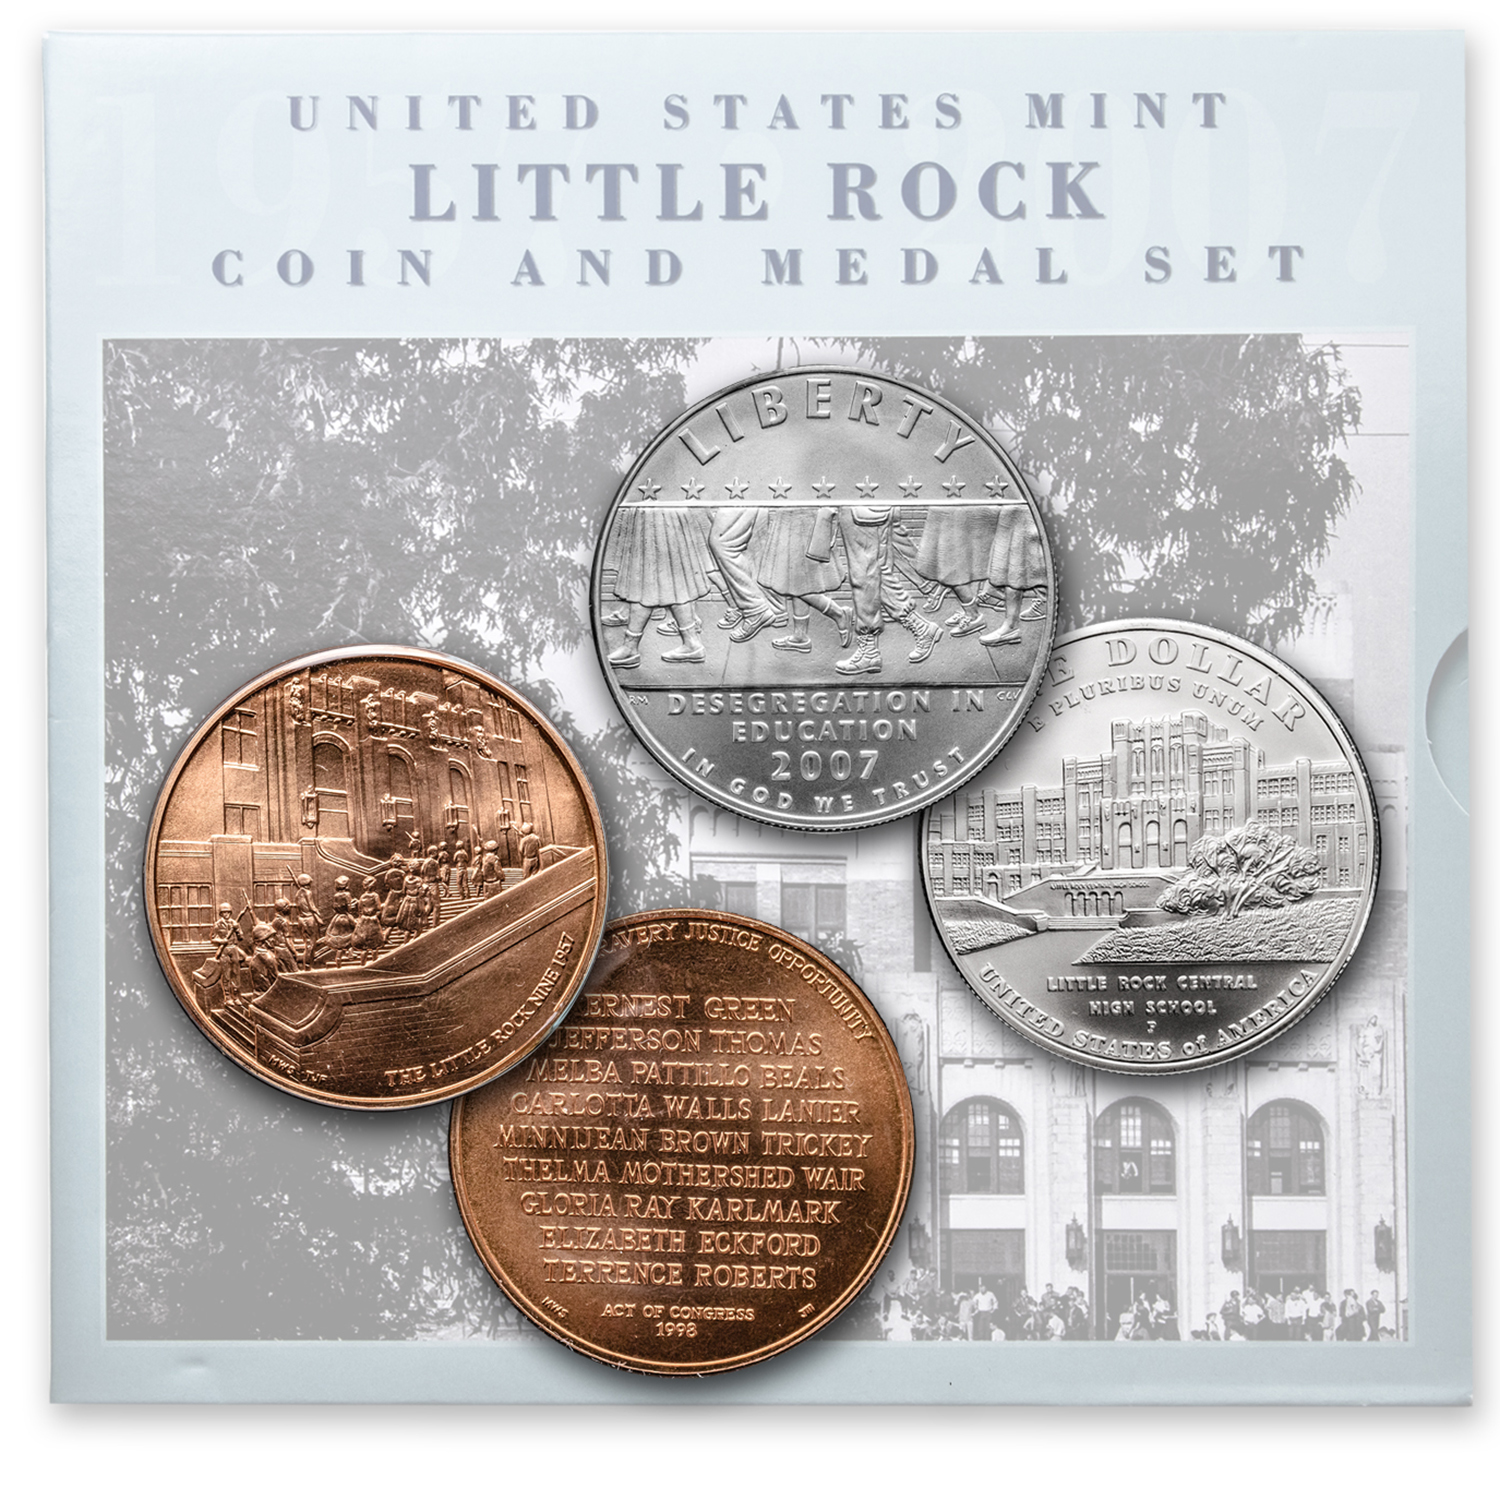 Buy 2007 Little Rock Desegregation Coin & Medal Set